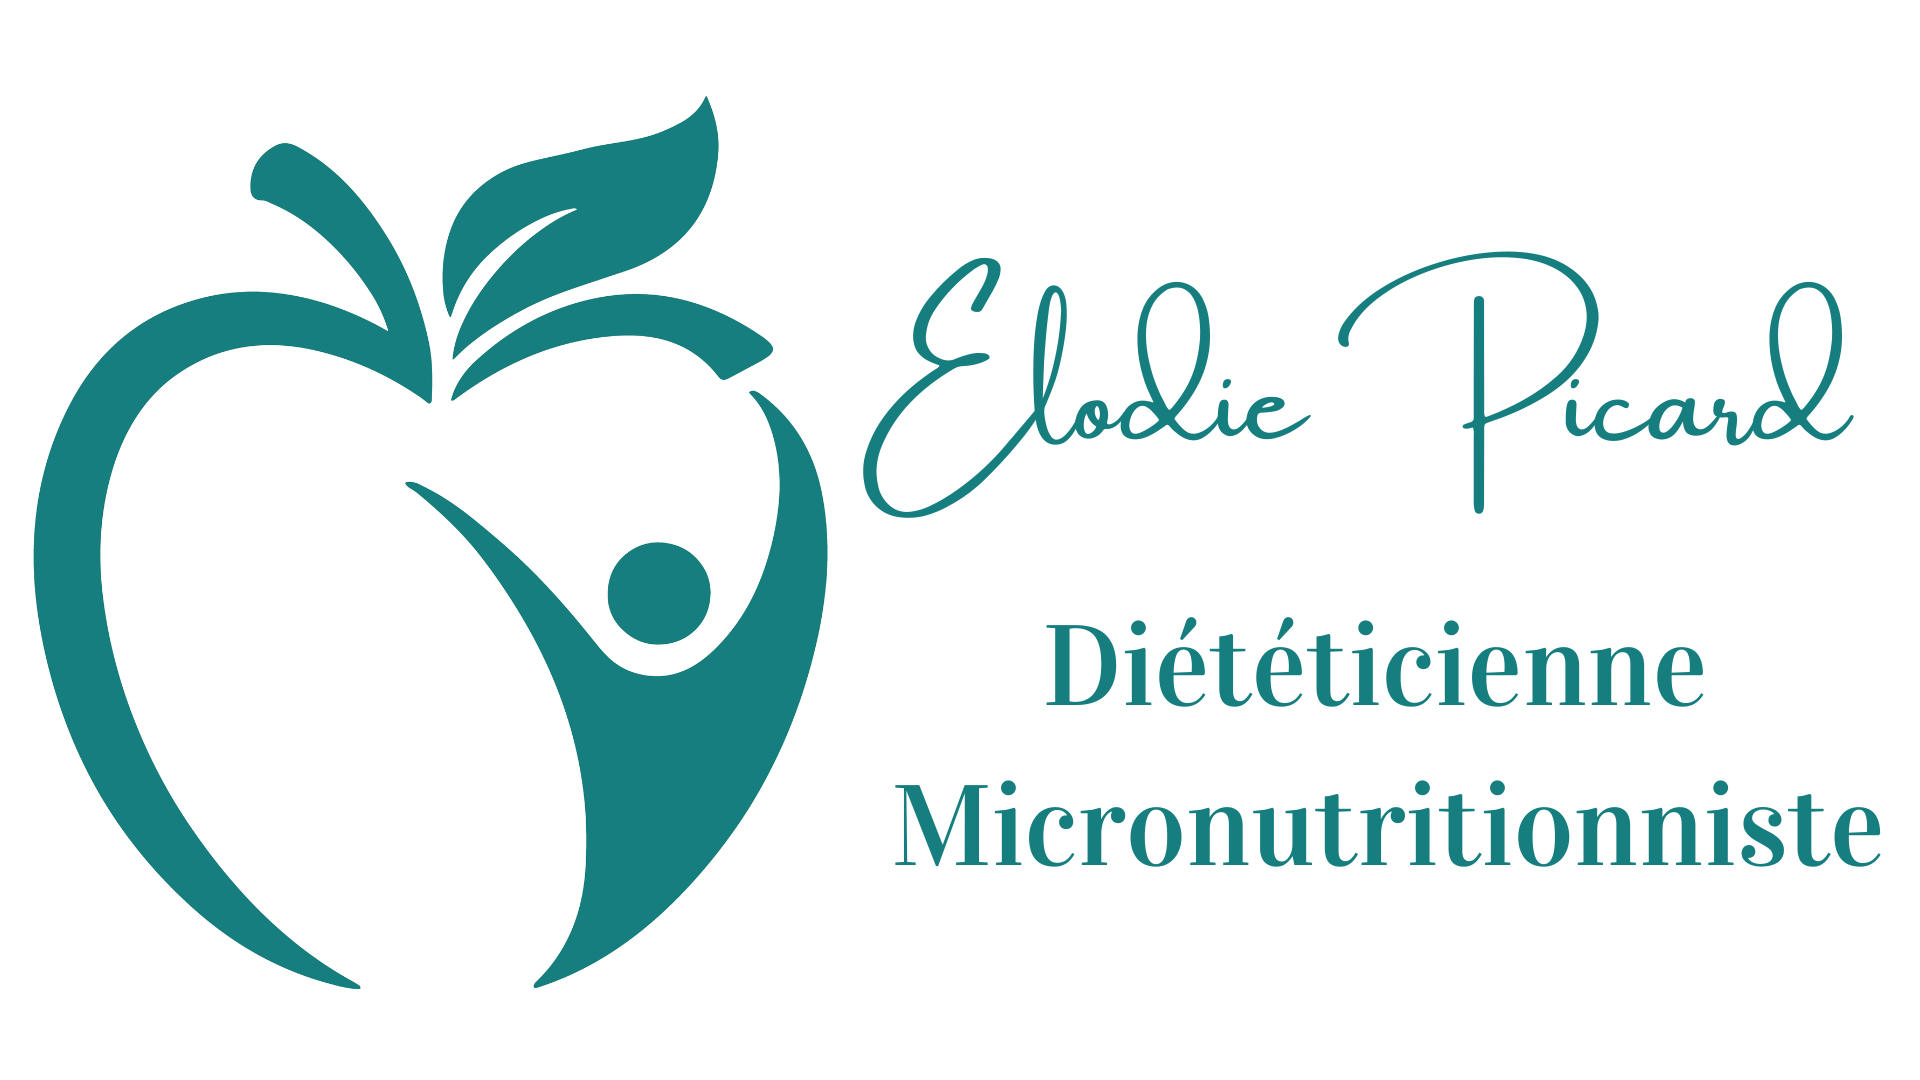 Elodie Picard - Diététicienne Micronutritionniste